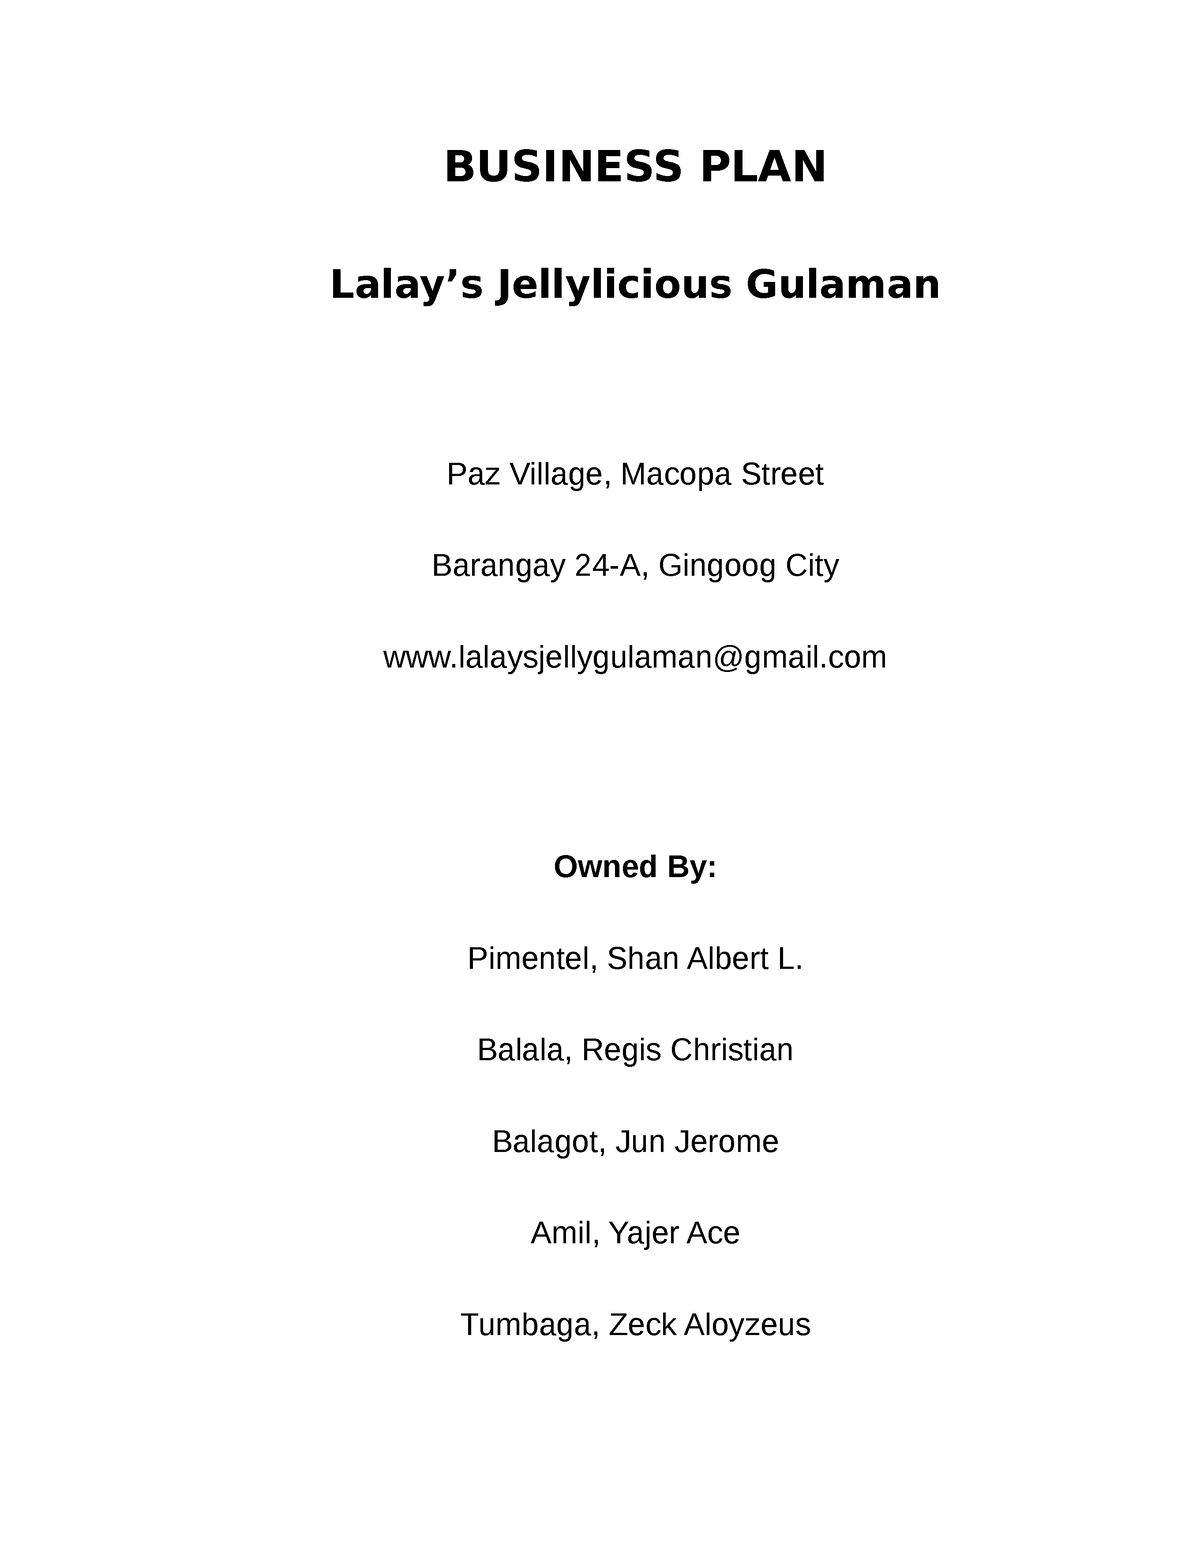 business plan of gulaman